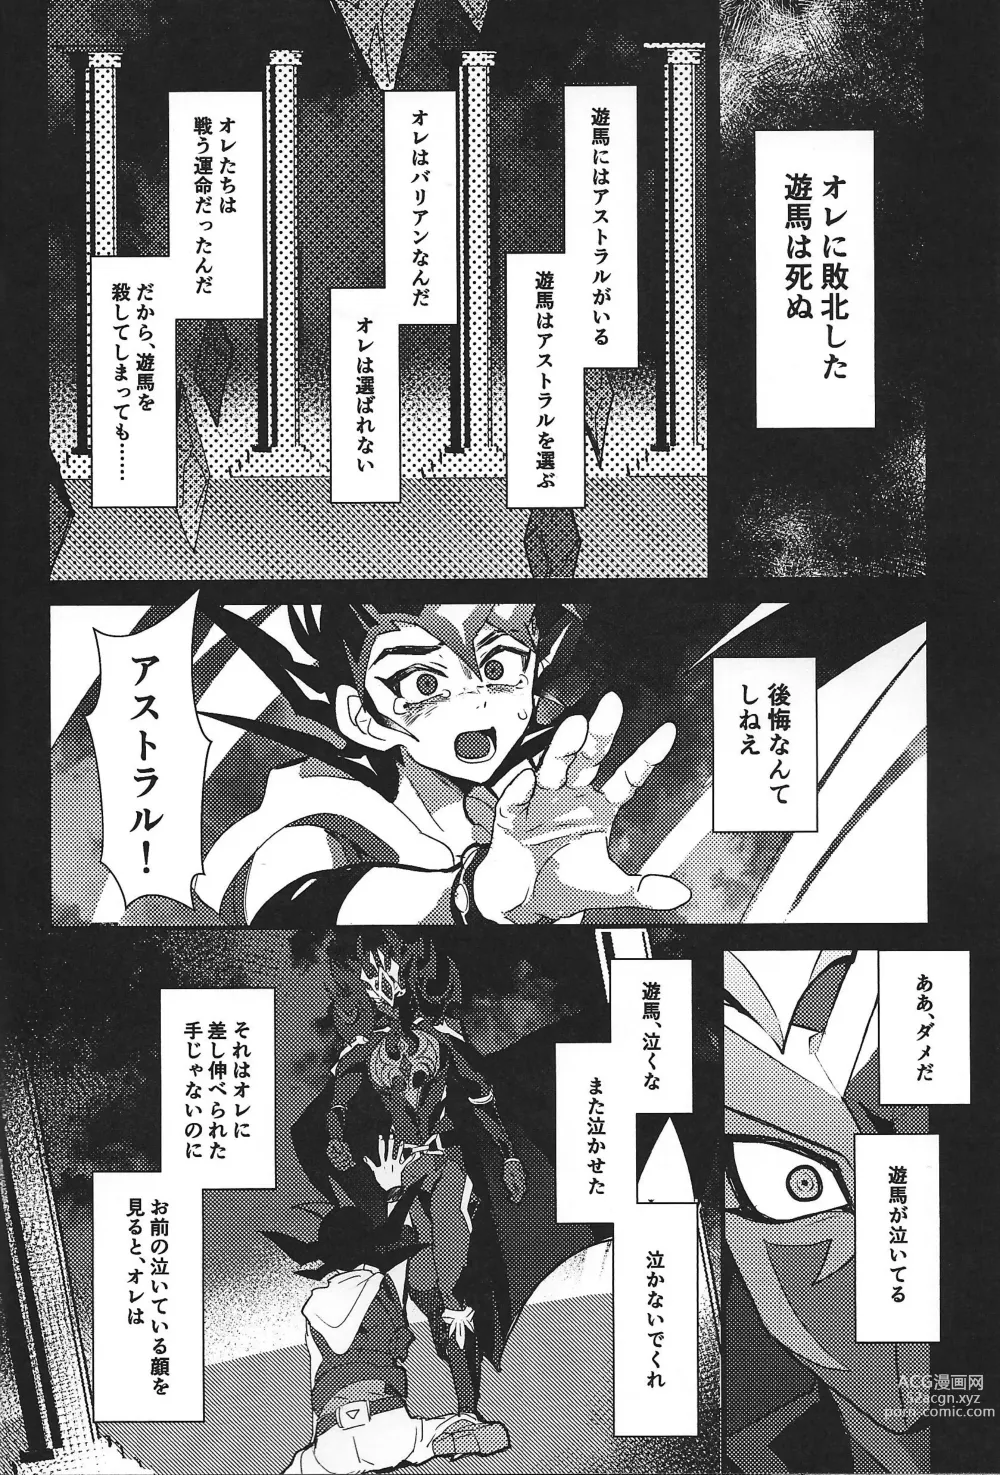 Page 100 of doujinshi ChaosPhantasma